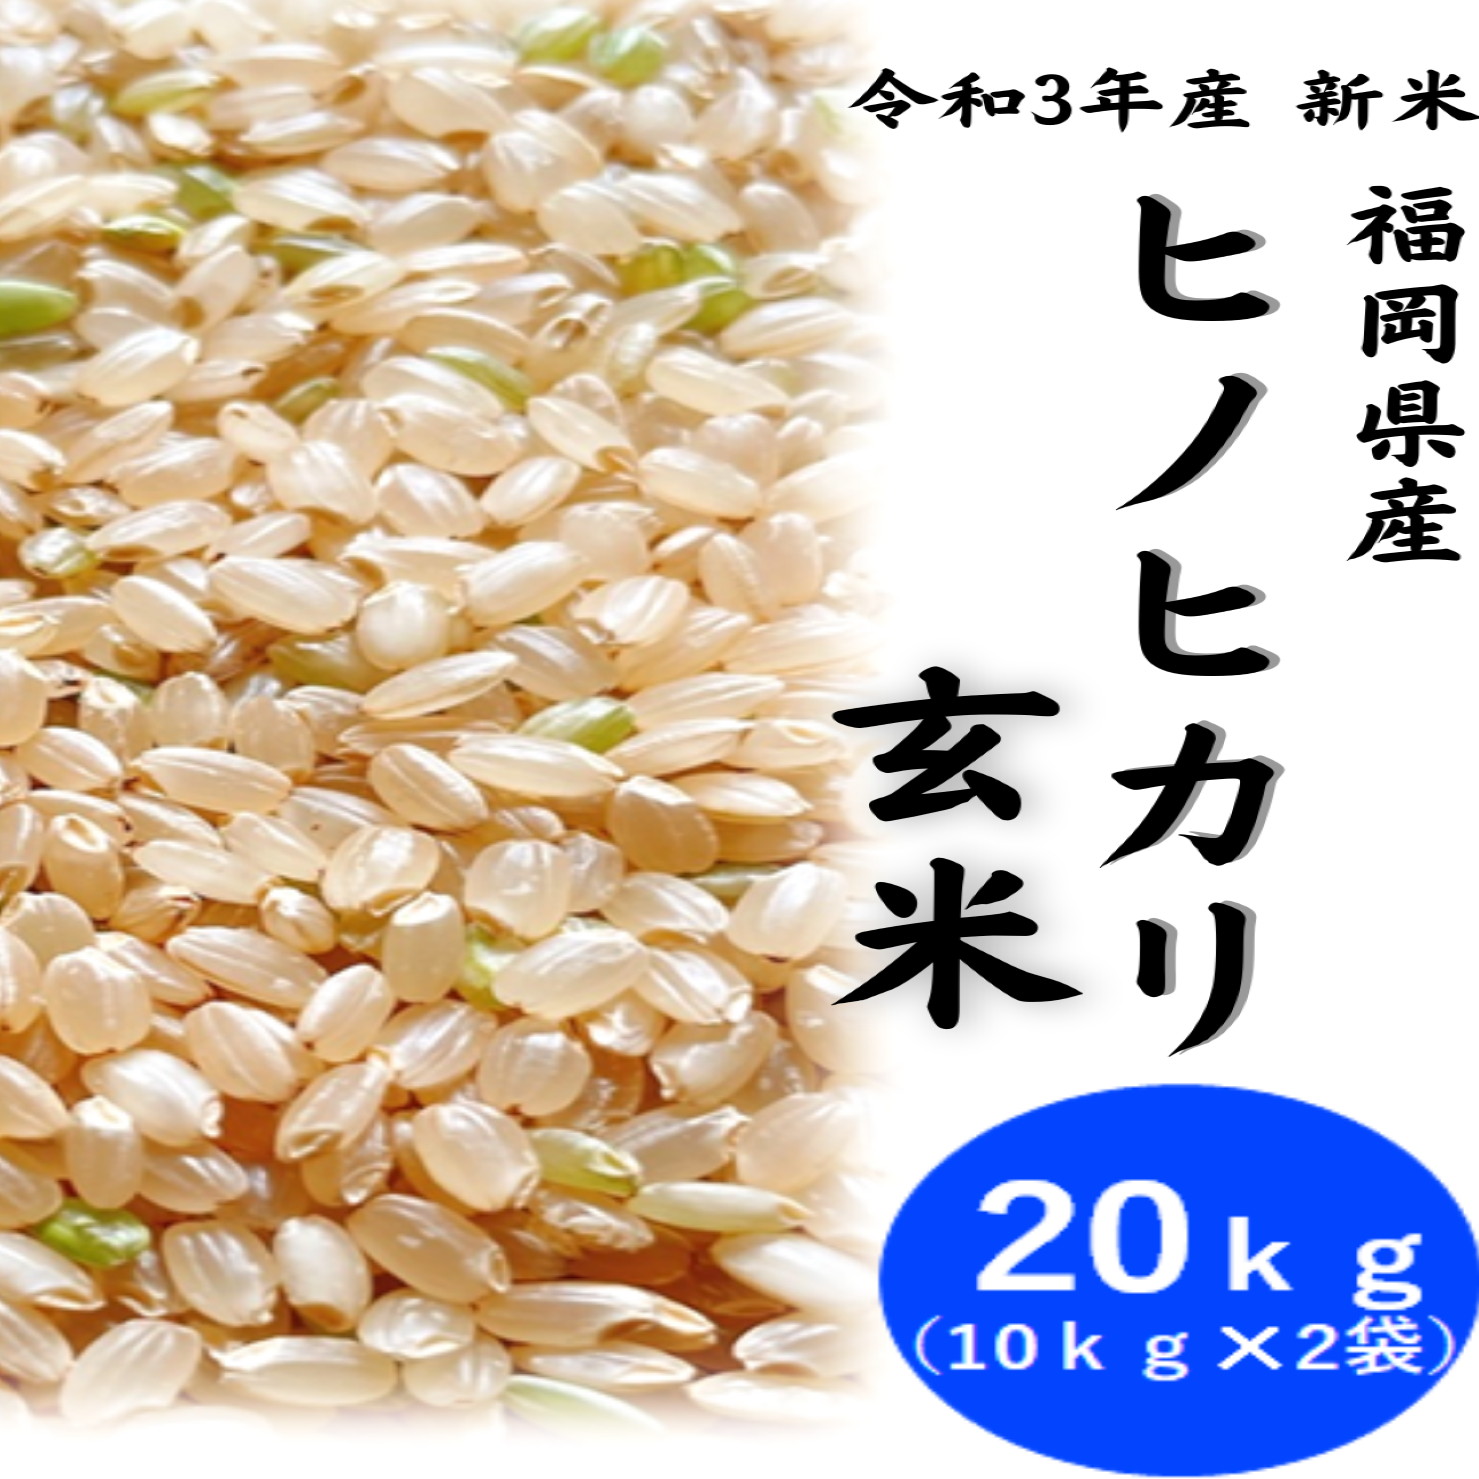 農家直送 福岡県産 ヒノヒカリ玄米20kg